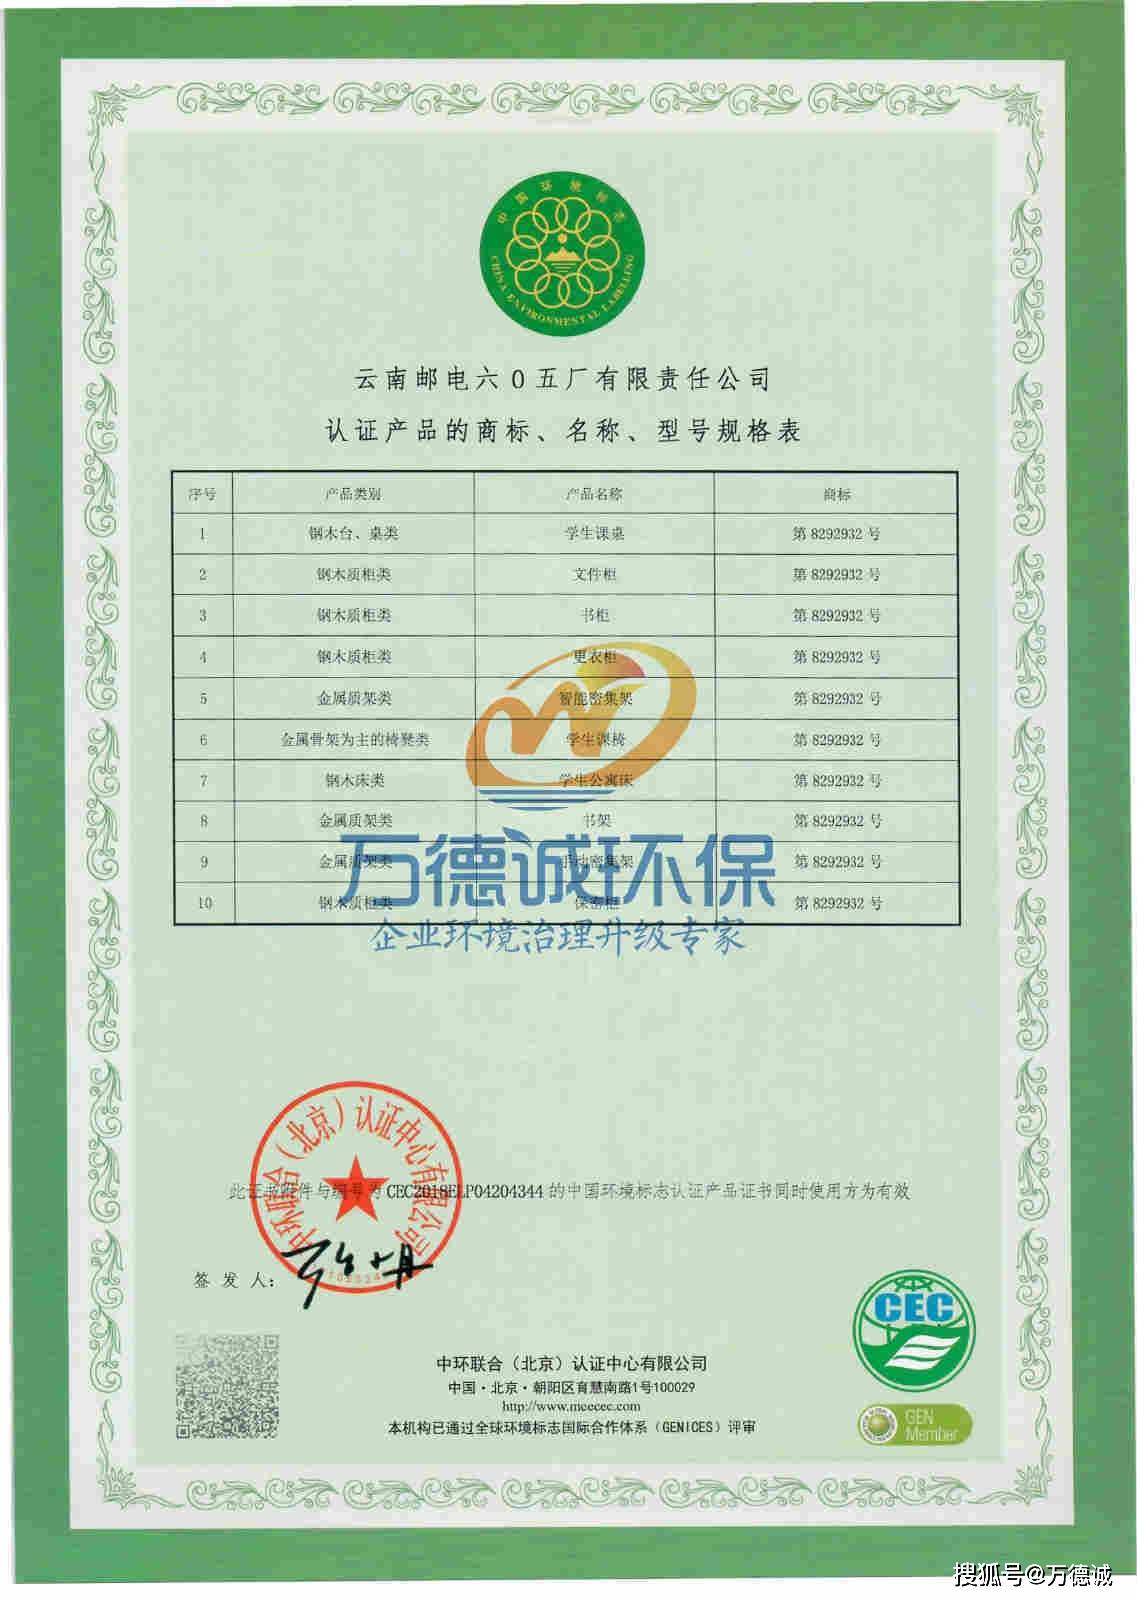 恭贺云南邮电六0五厂在万德诚的协助下获得 十环认证 证书